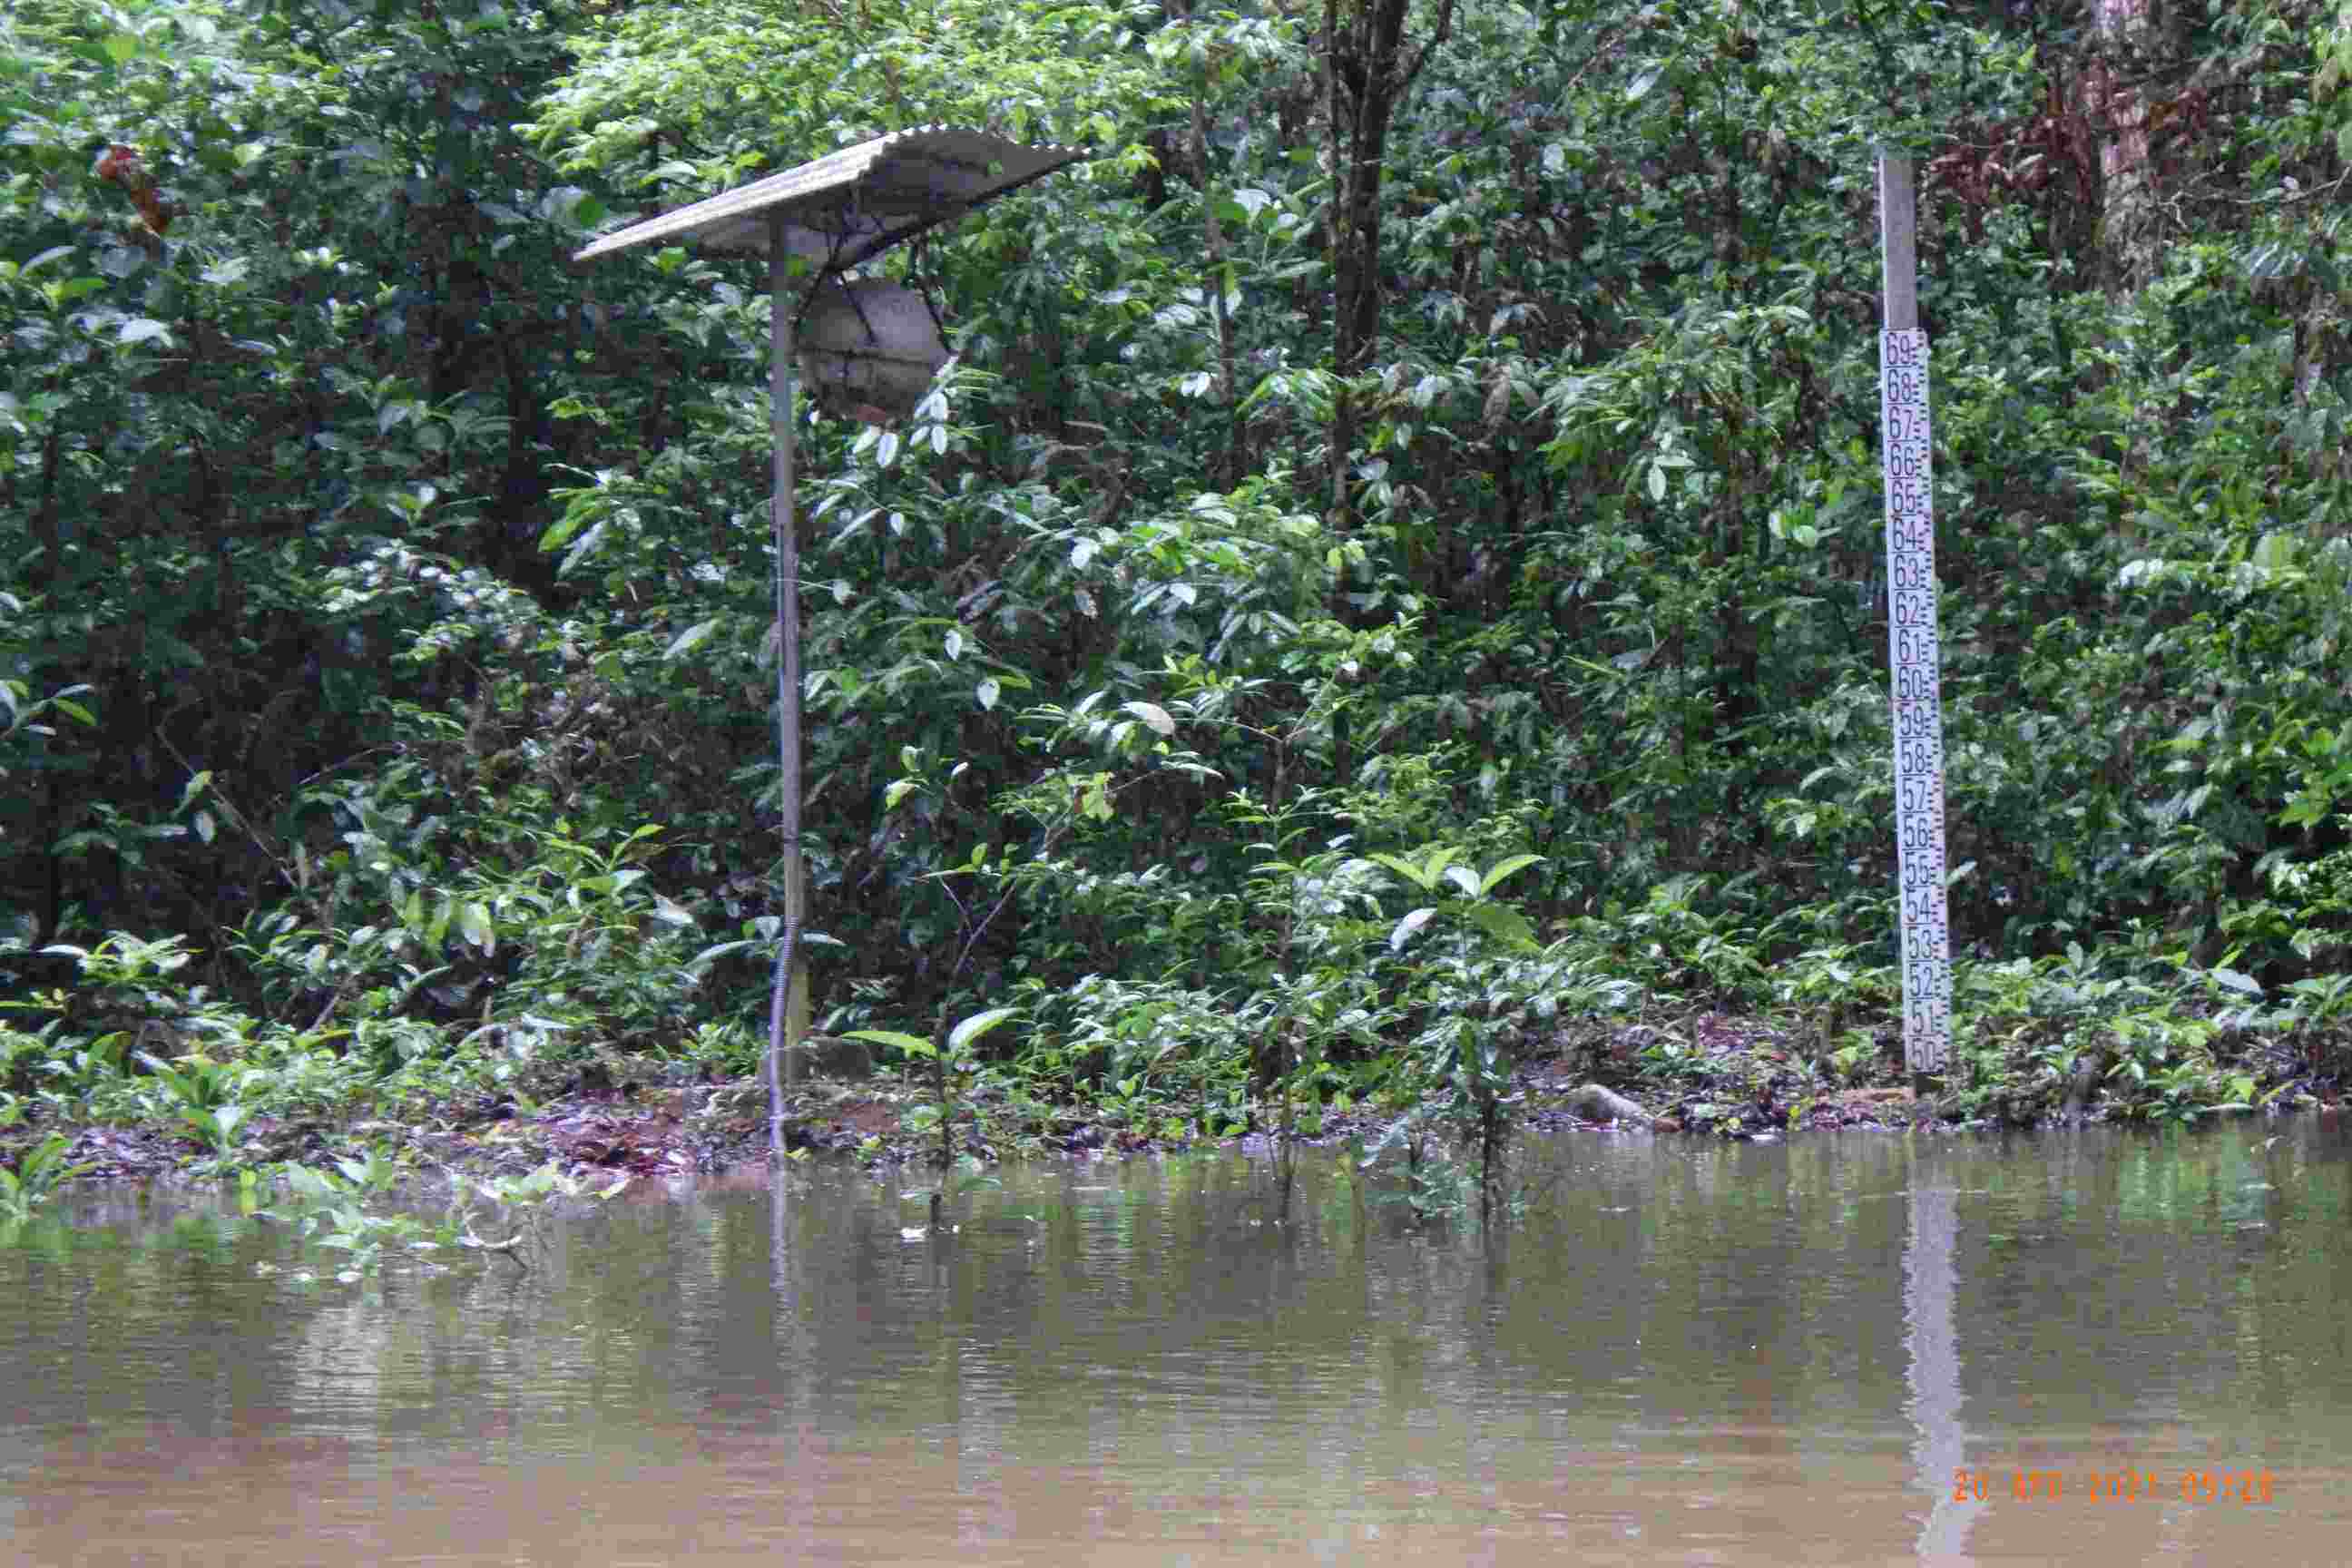 Station hydrologique sur un fleuve guyanais (crédit photagraphique CVH Guyane)